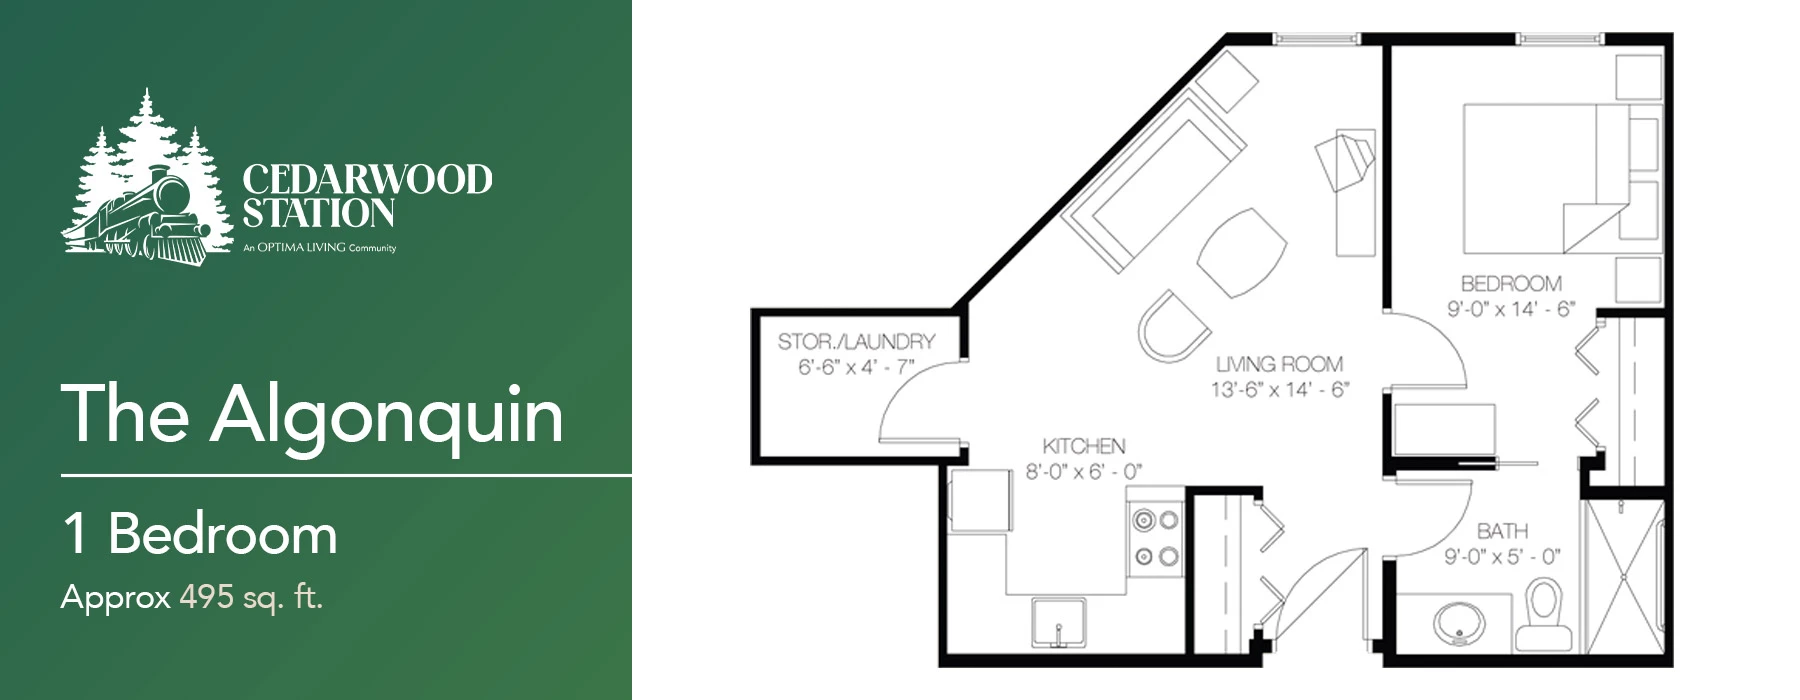 The Algonquin 1 bedroom floor plan